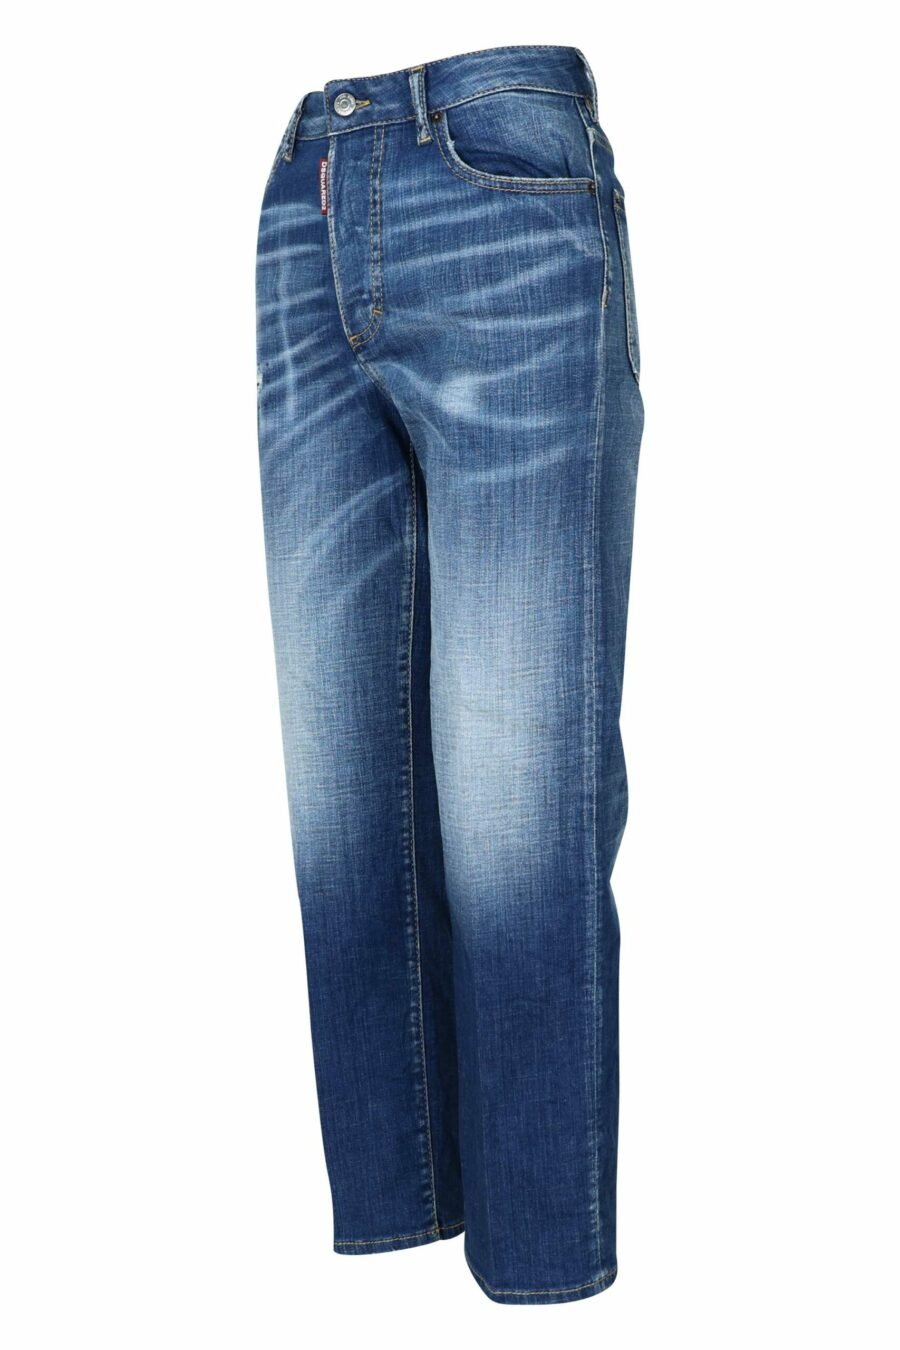 Pantalón azul "boston jean" desgastado - 8054148460044 1 scaled